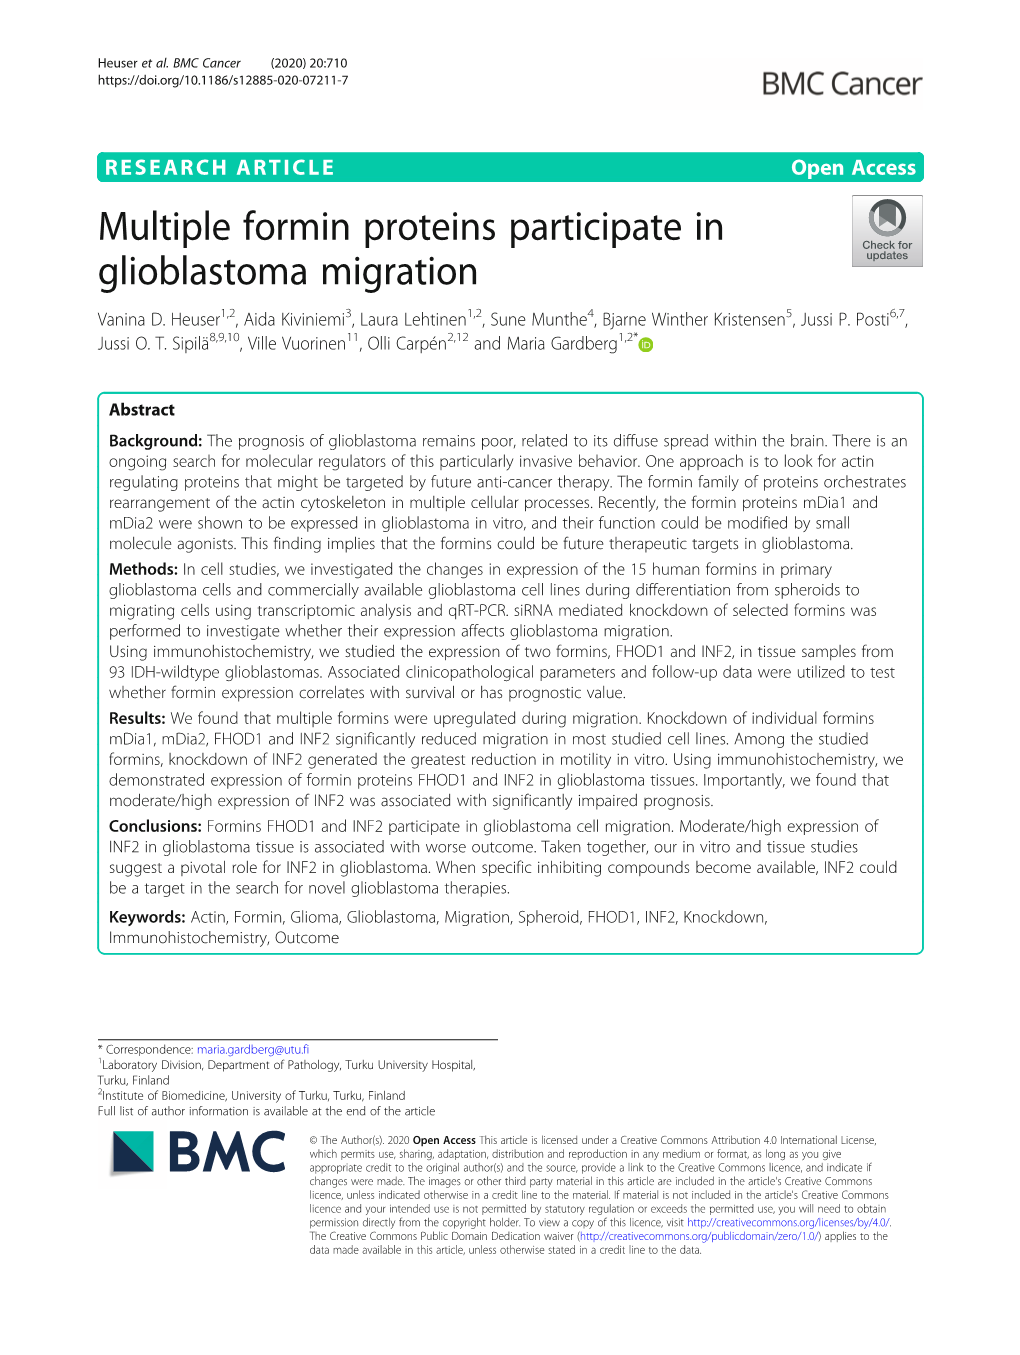 Multiple Formin Proteins Participate in Glioblastoma Migration Vanina D